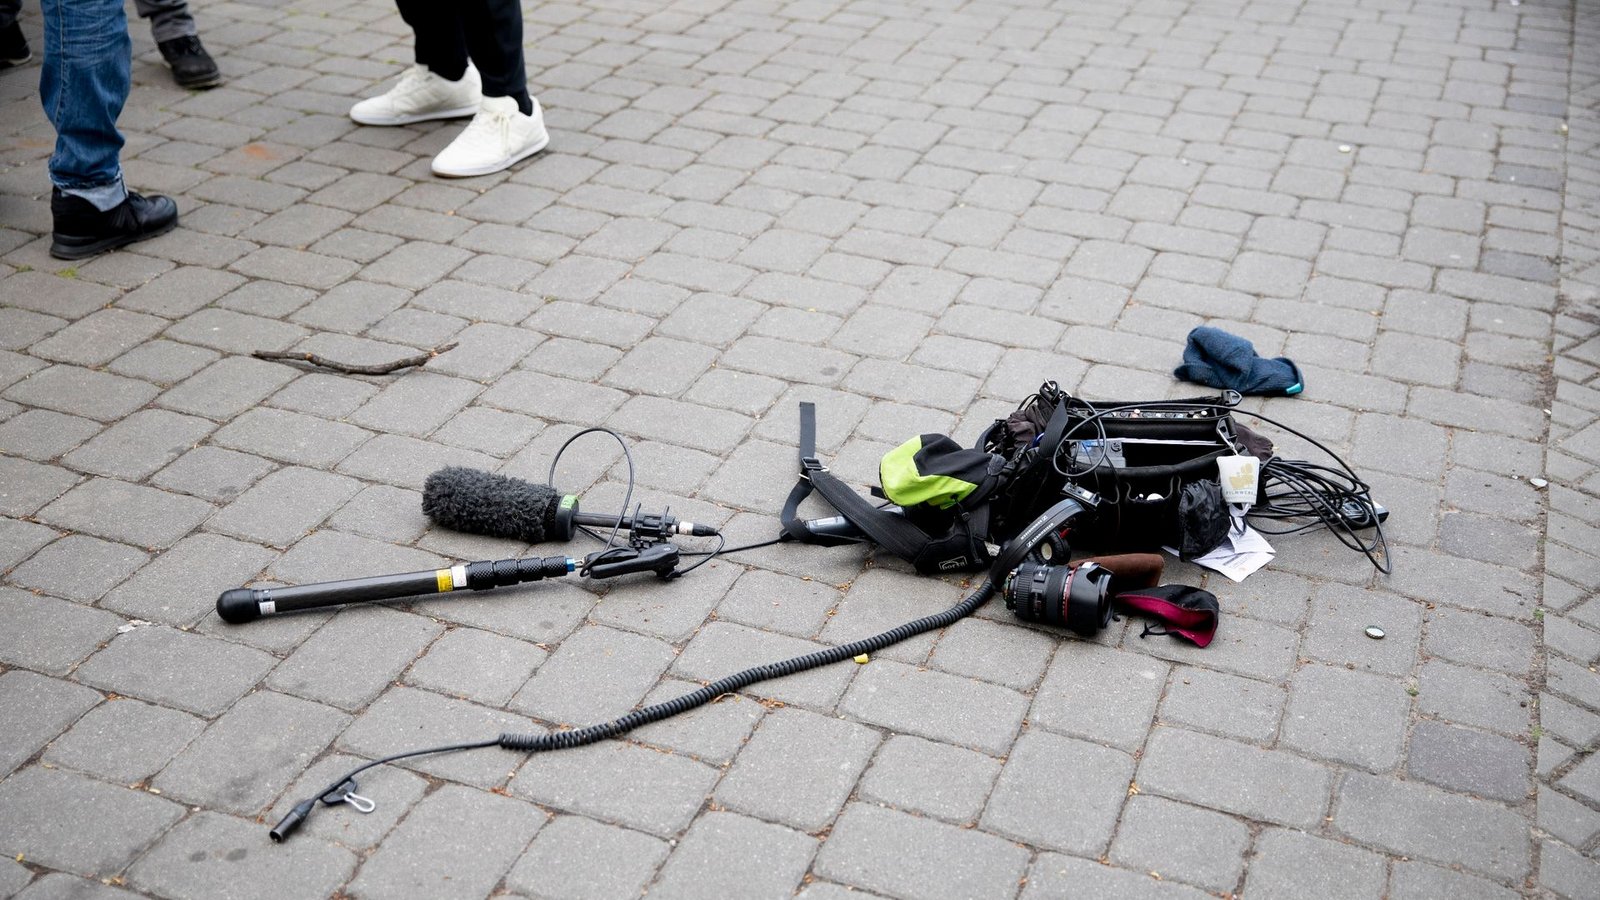 Die Ausrüstung eines Kamerateams liegt nach einem Übergriff in Berlin auf dem Boden.Foto: Christoph Soeder/dpa